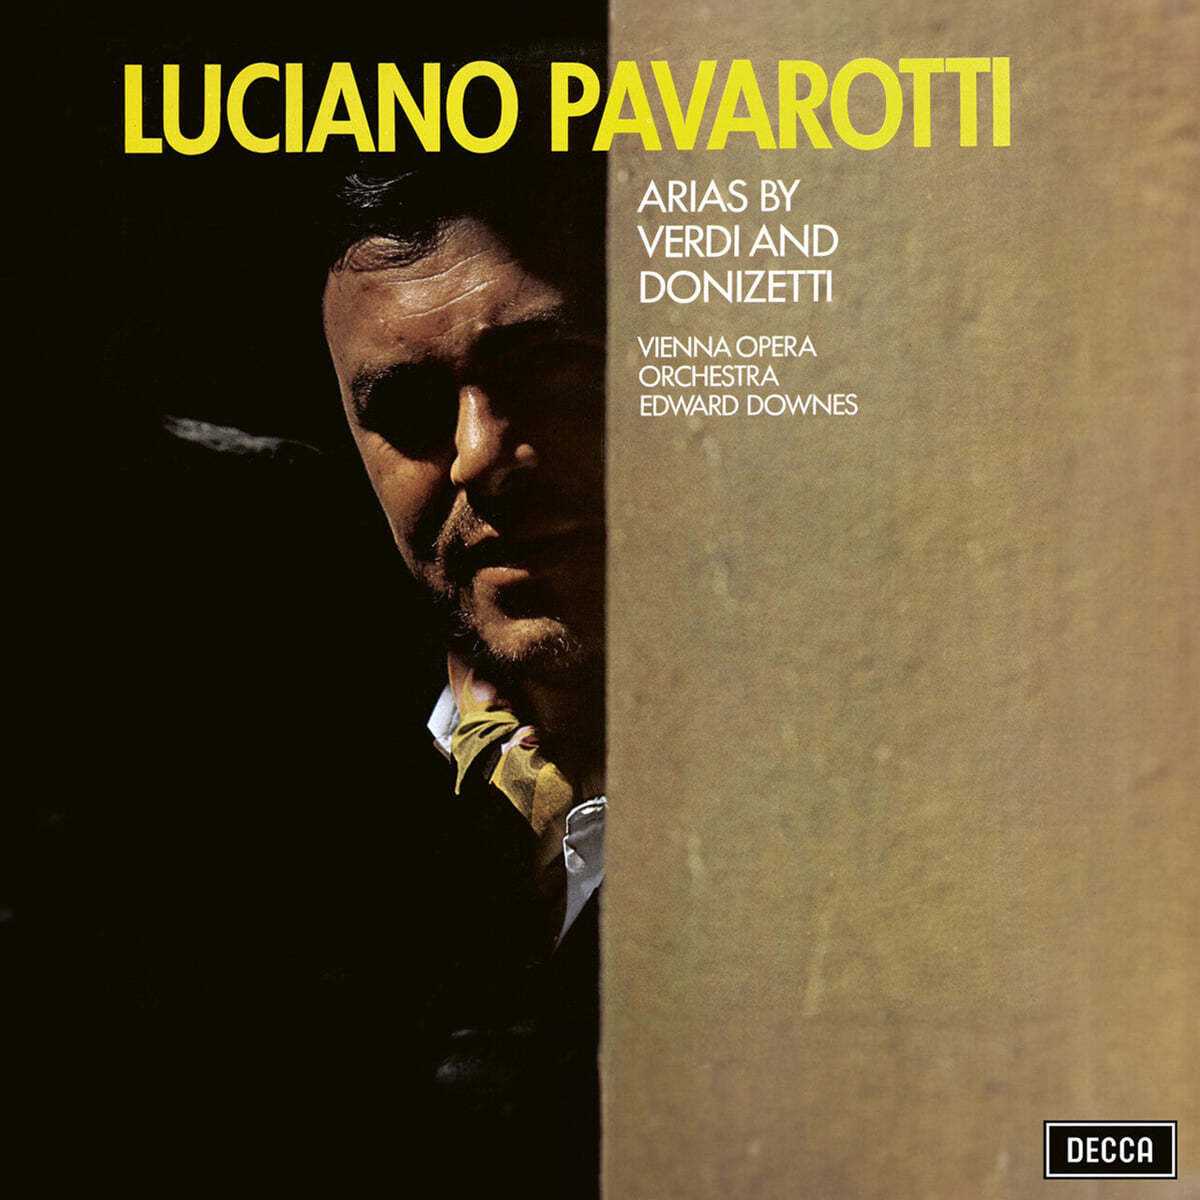 Luciano Pavarotti 루치아노 파바로티 걸작 리사이틀 - 베르디, 도니제티 아리아 (Arias By Verdi & Donizetti) [컬러 LP]